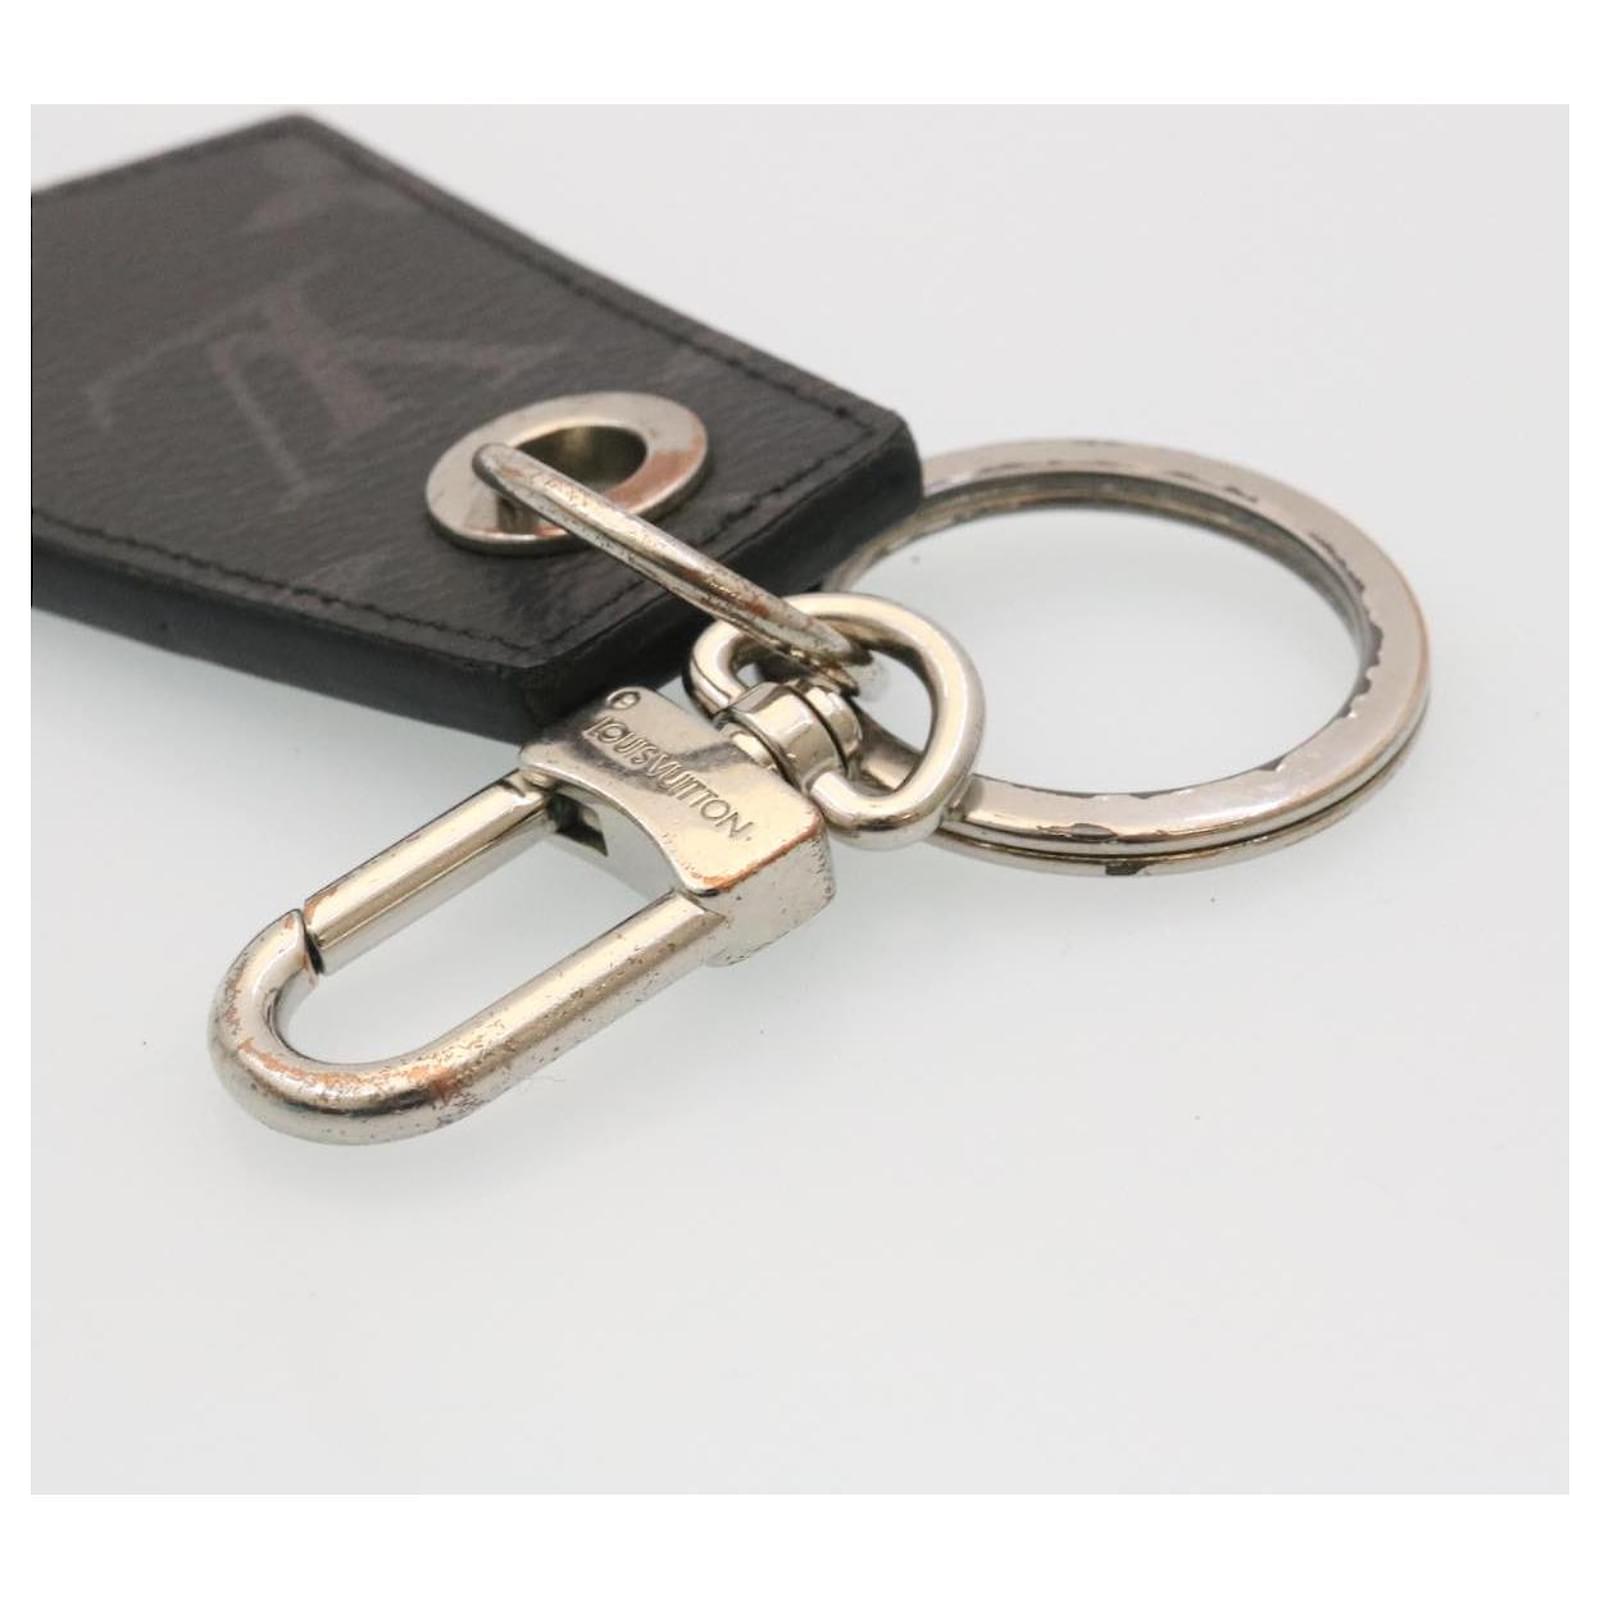 Louis Vuitton Monogram Key holder case – Closet Connection Resale